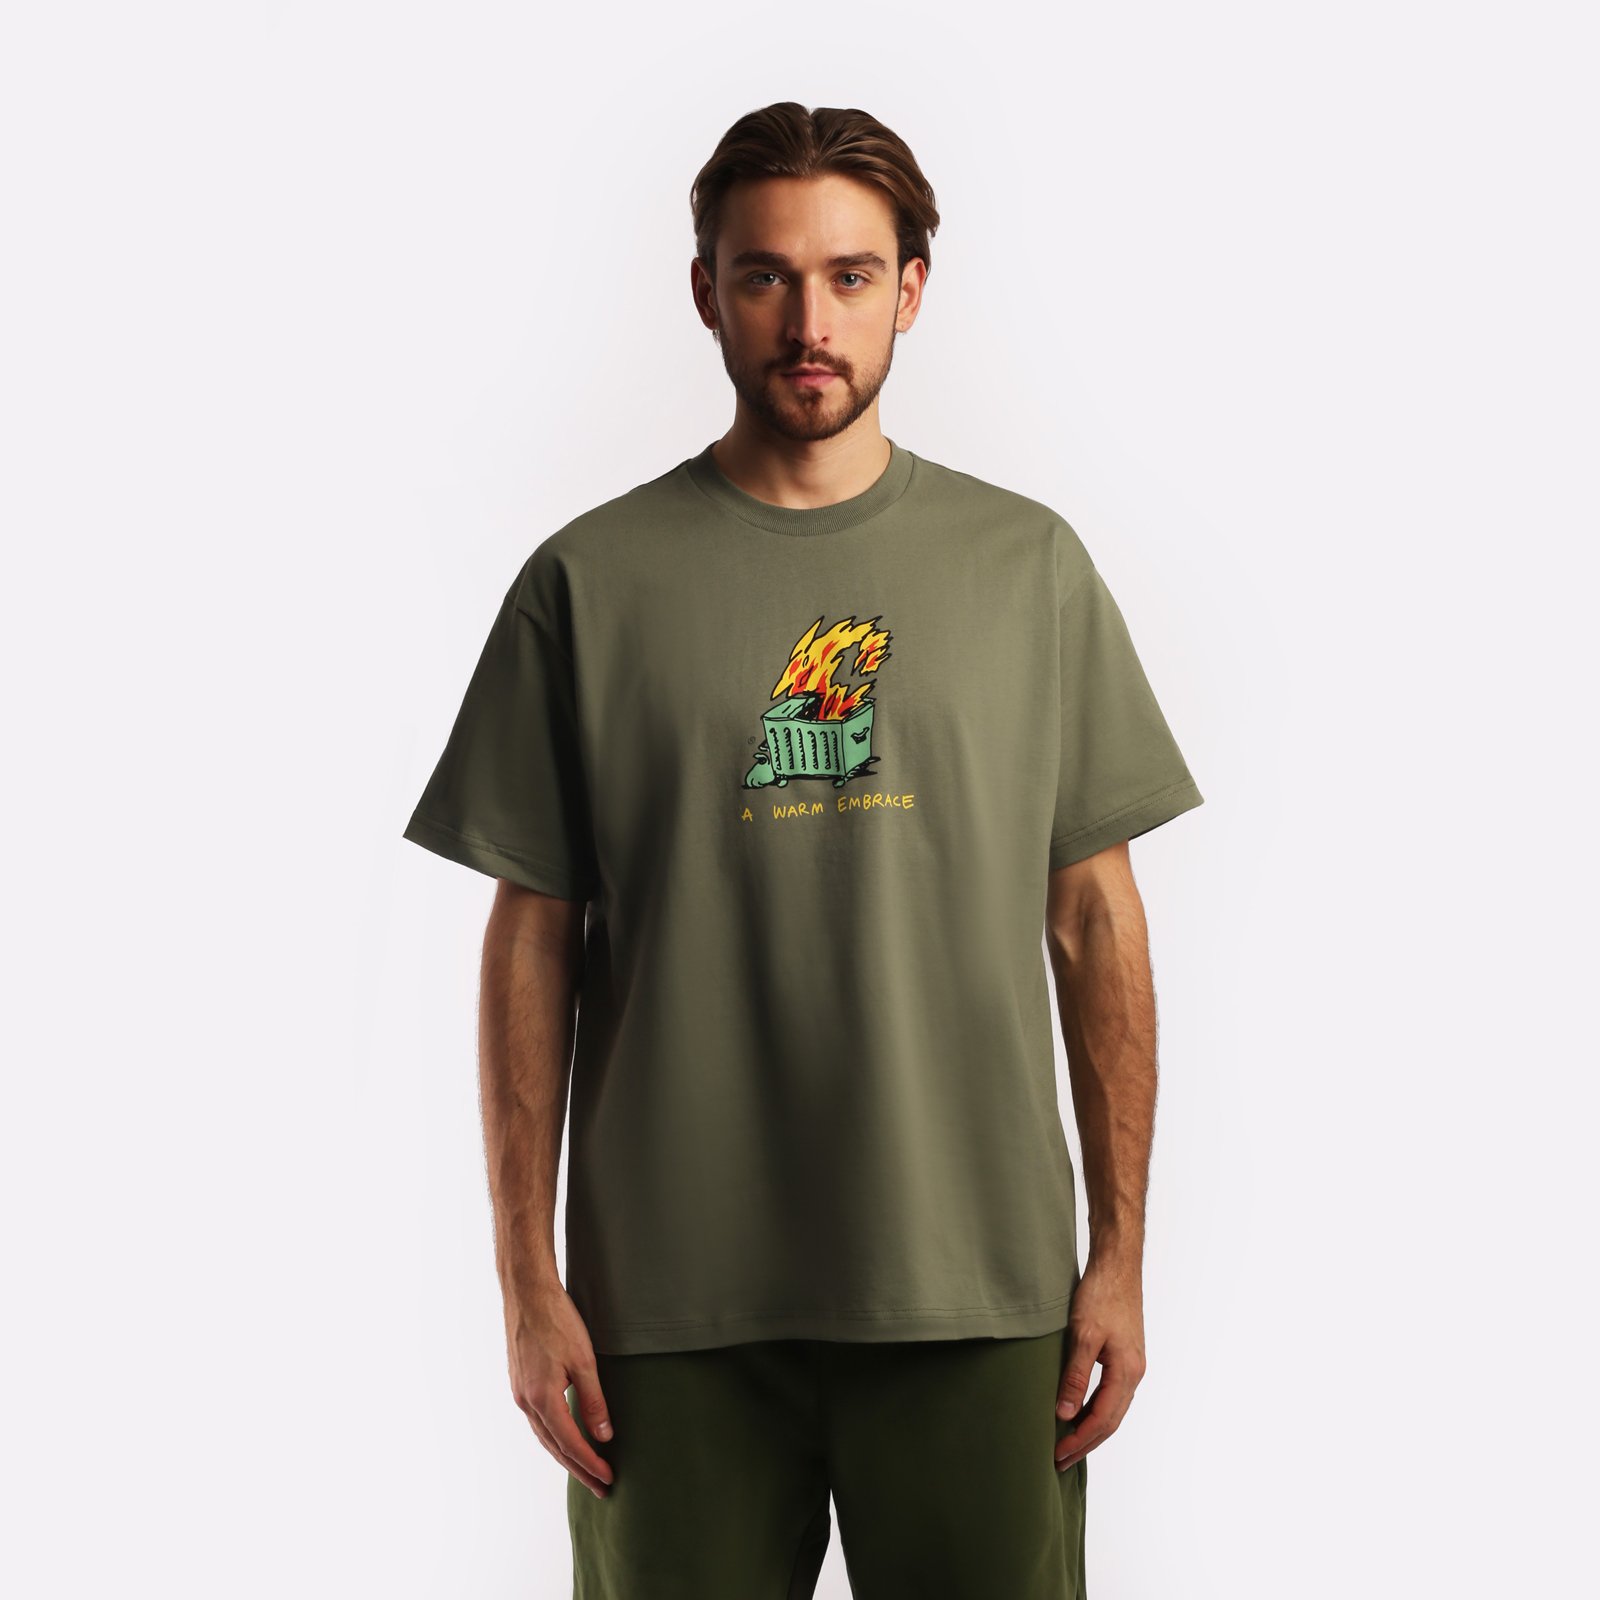 мужская зеленая футболка Carhartt WIP S/S Warm Embrace T-Shirt I032390-green - цена, описание, фото 1